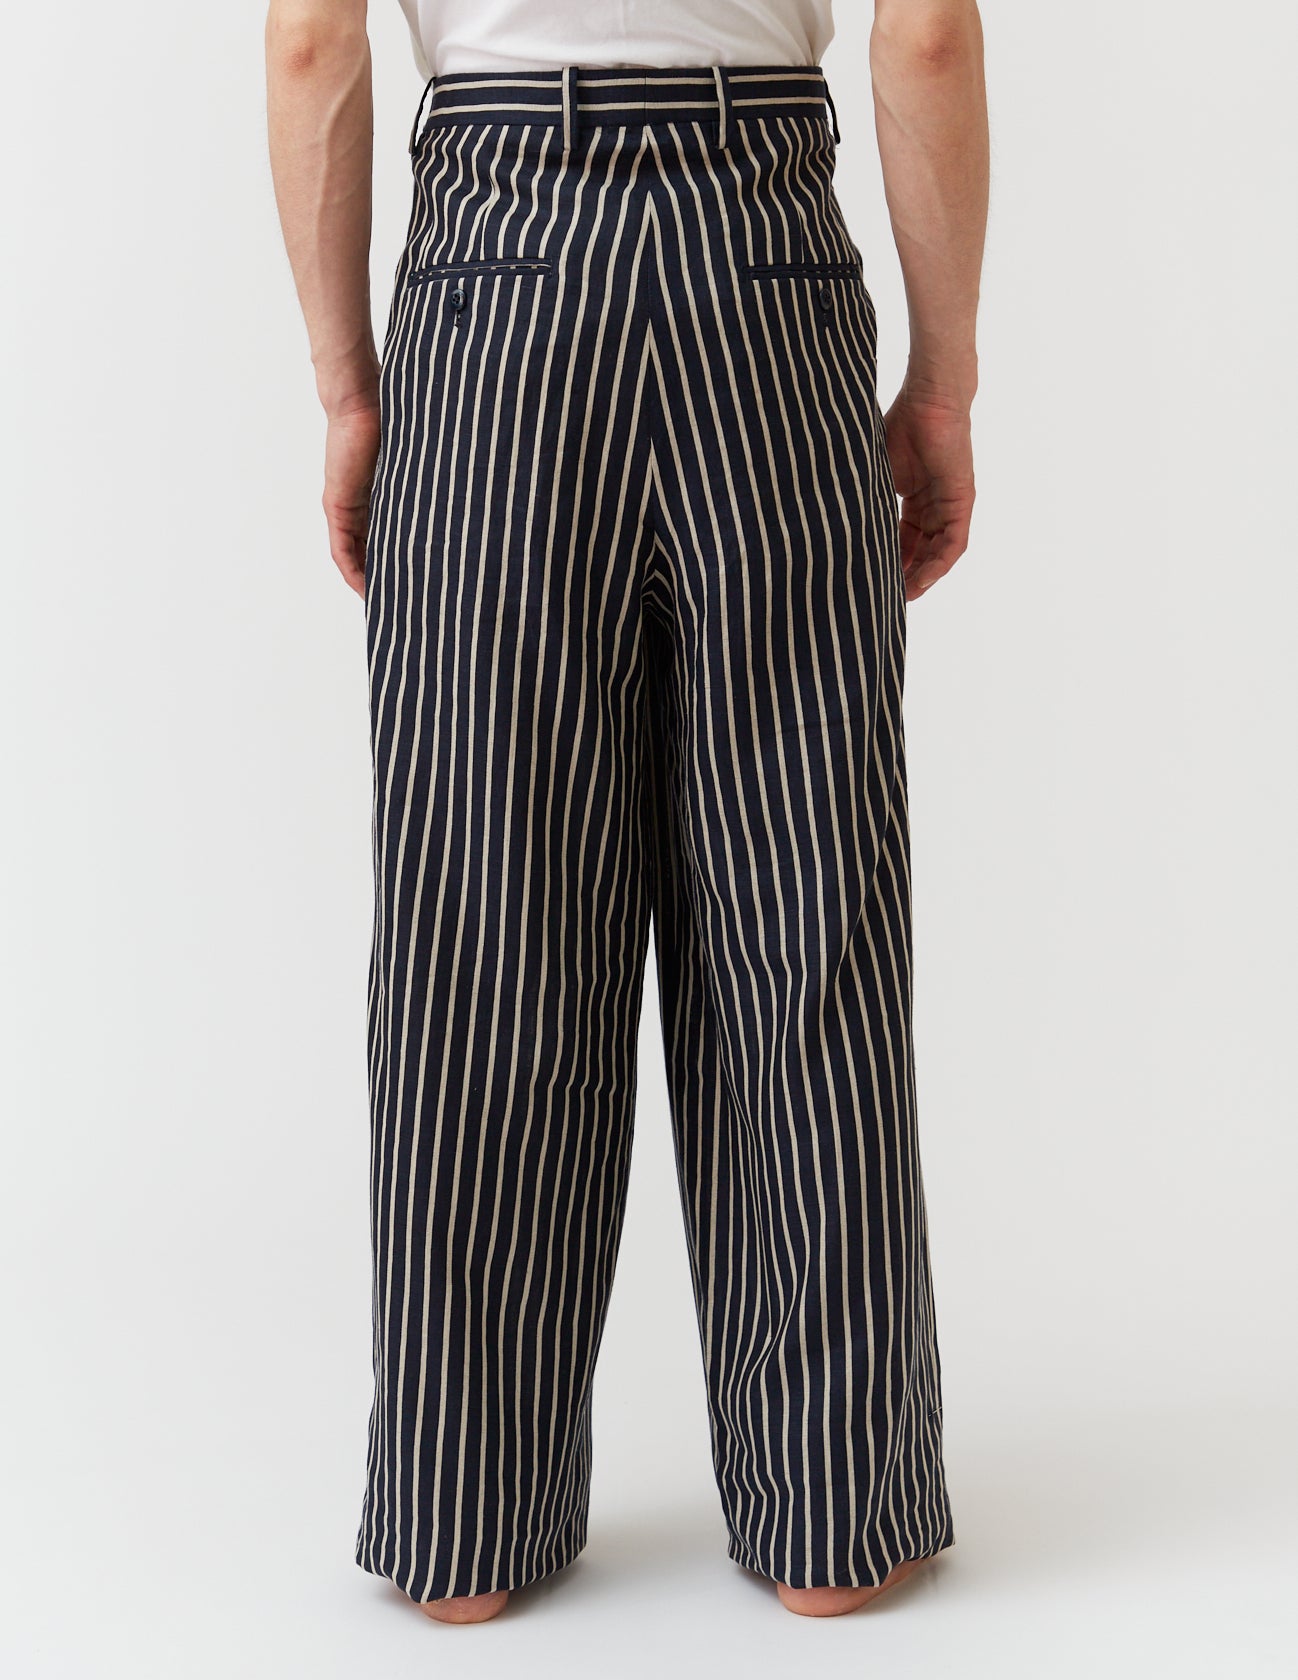 TUCKED WIDE PANTS linen stripe